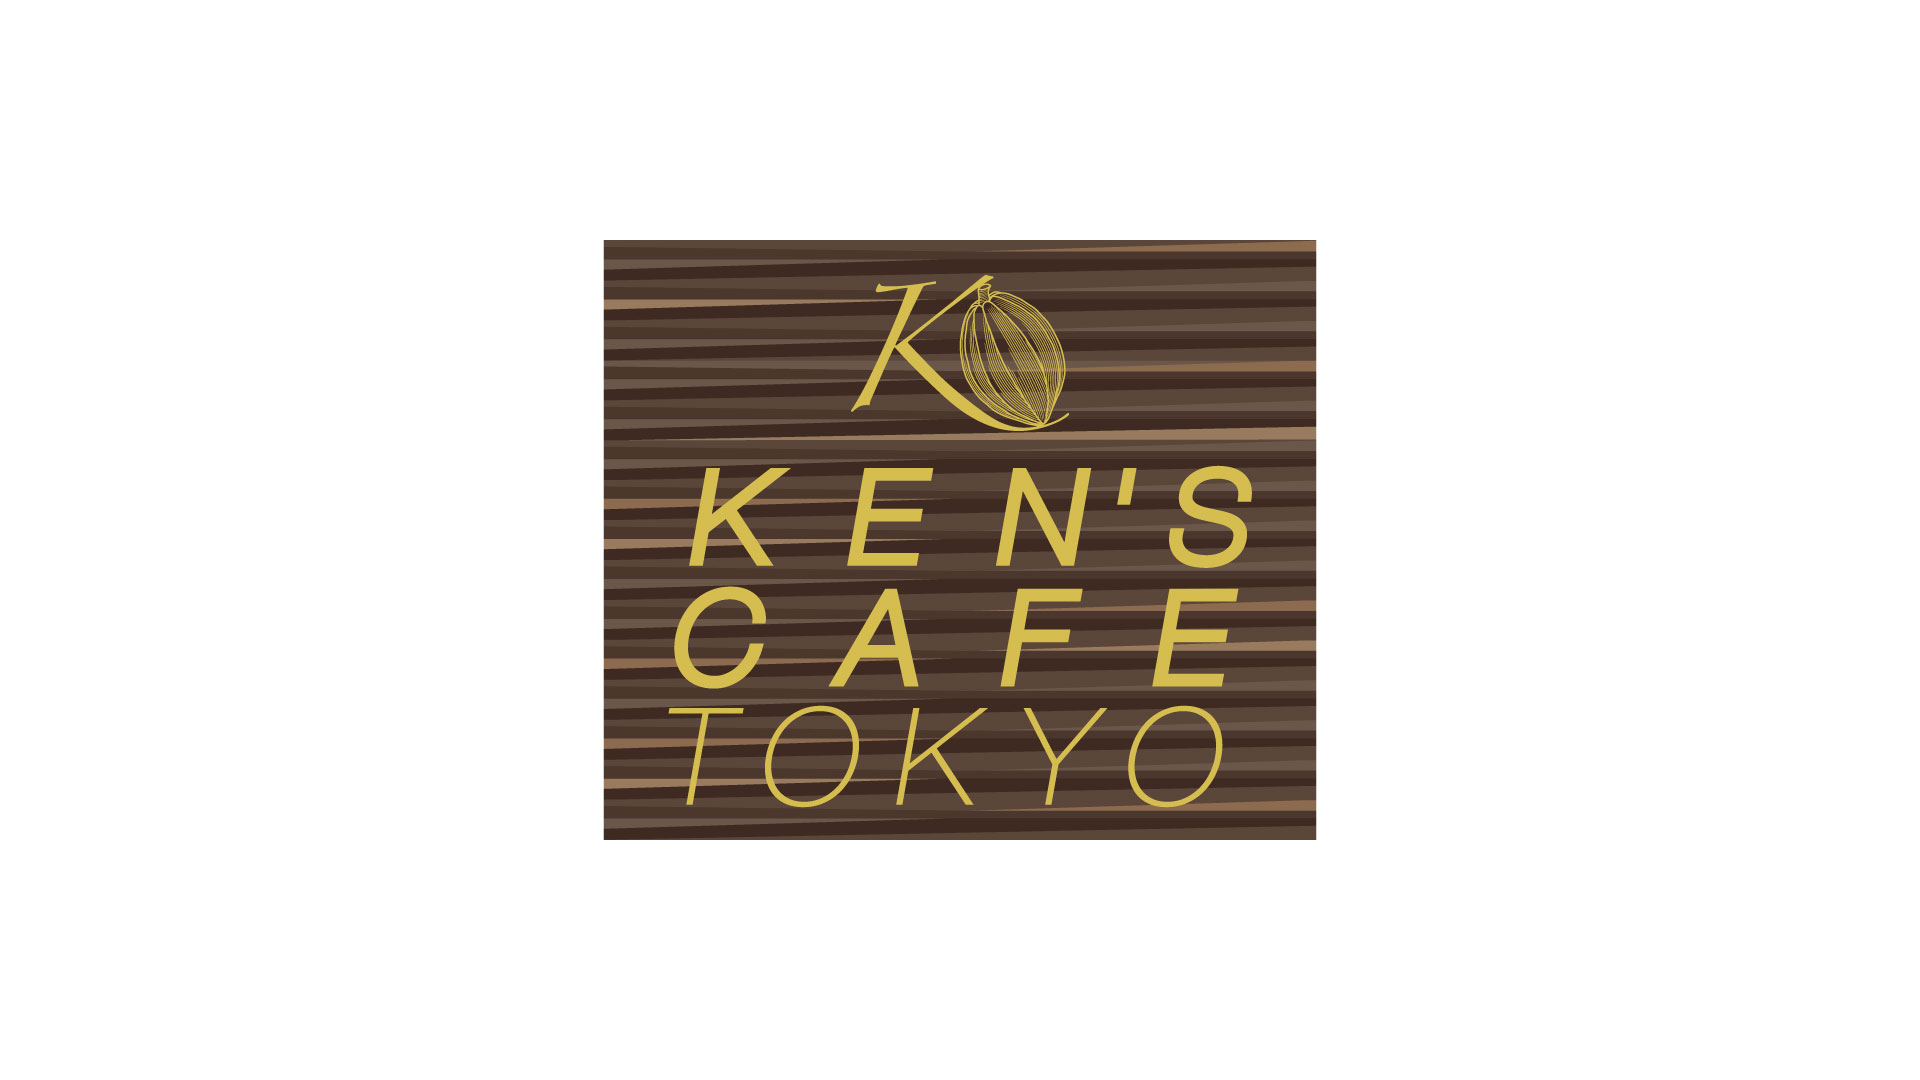 KEN’S CAFE TOKYO